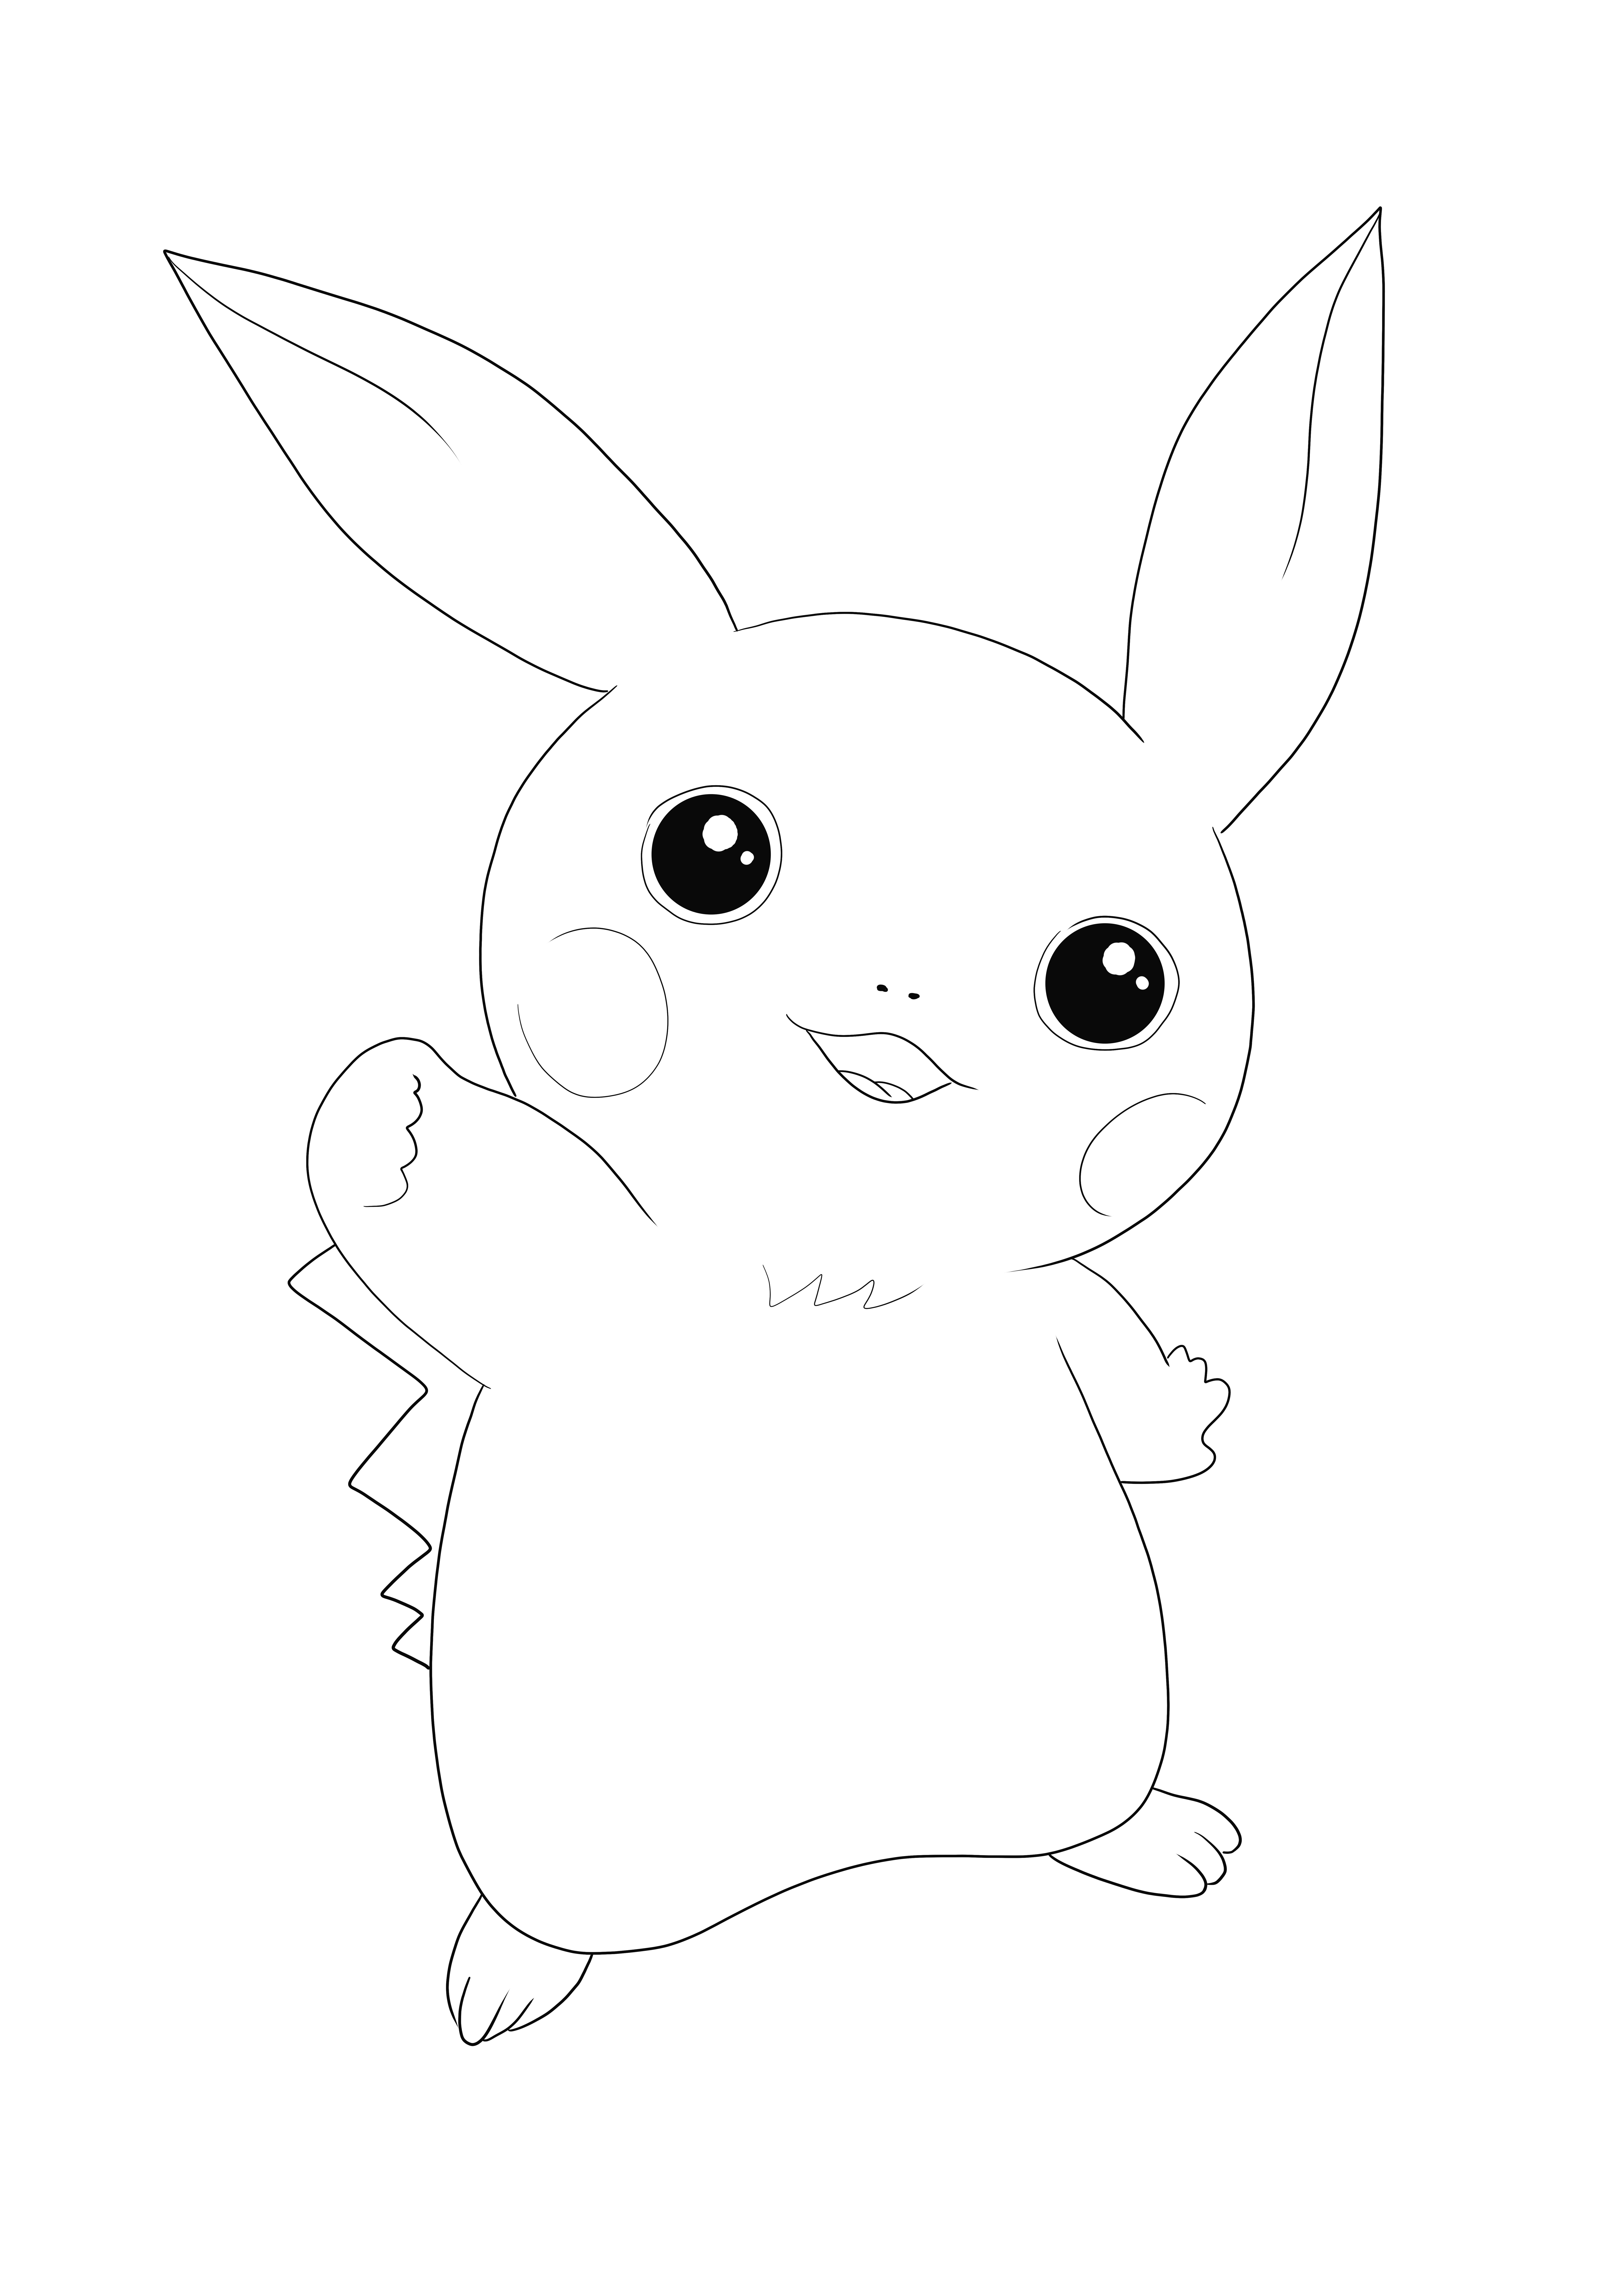 Voici notre coloriage de Pikachu, gratuit à télécharger ou à imprimer